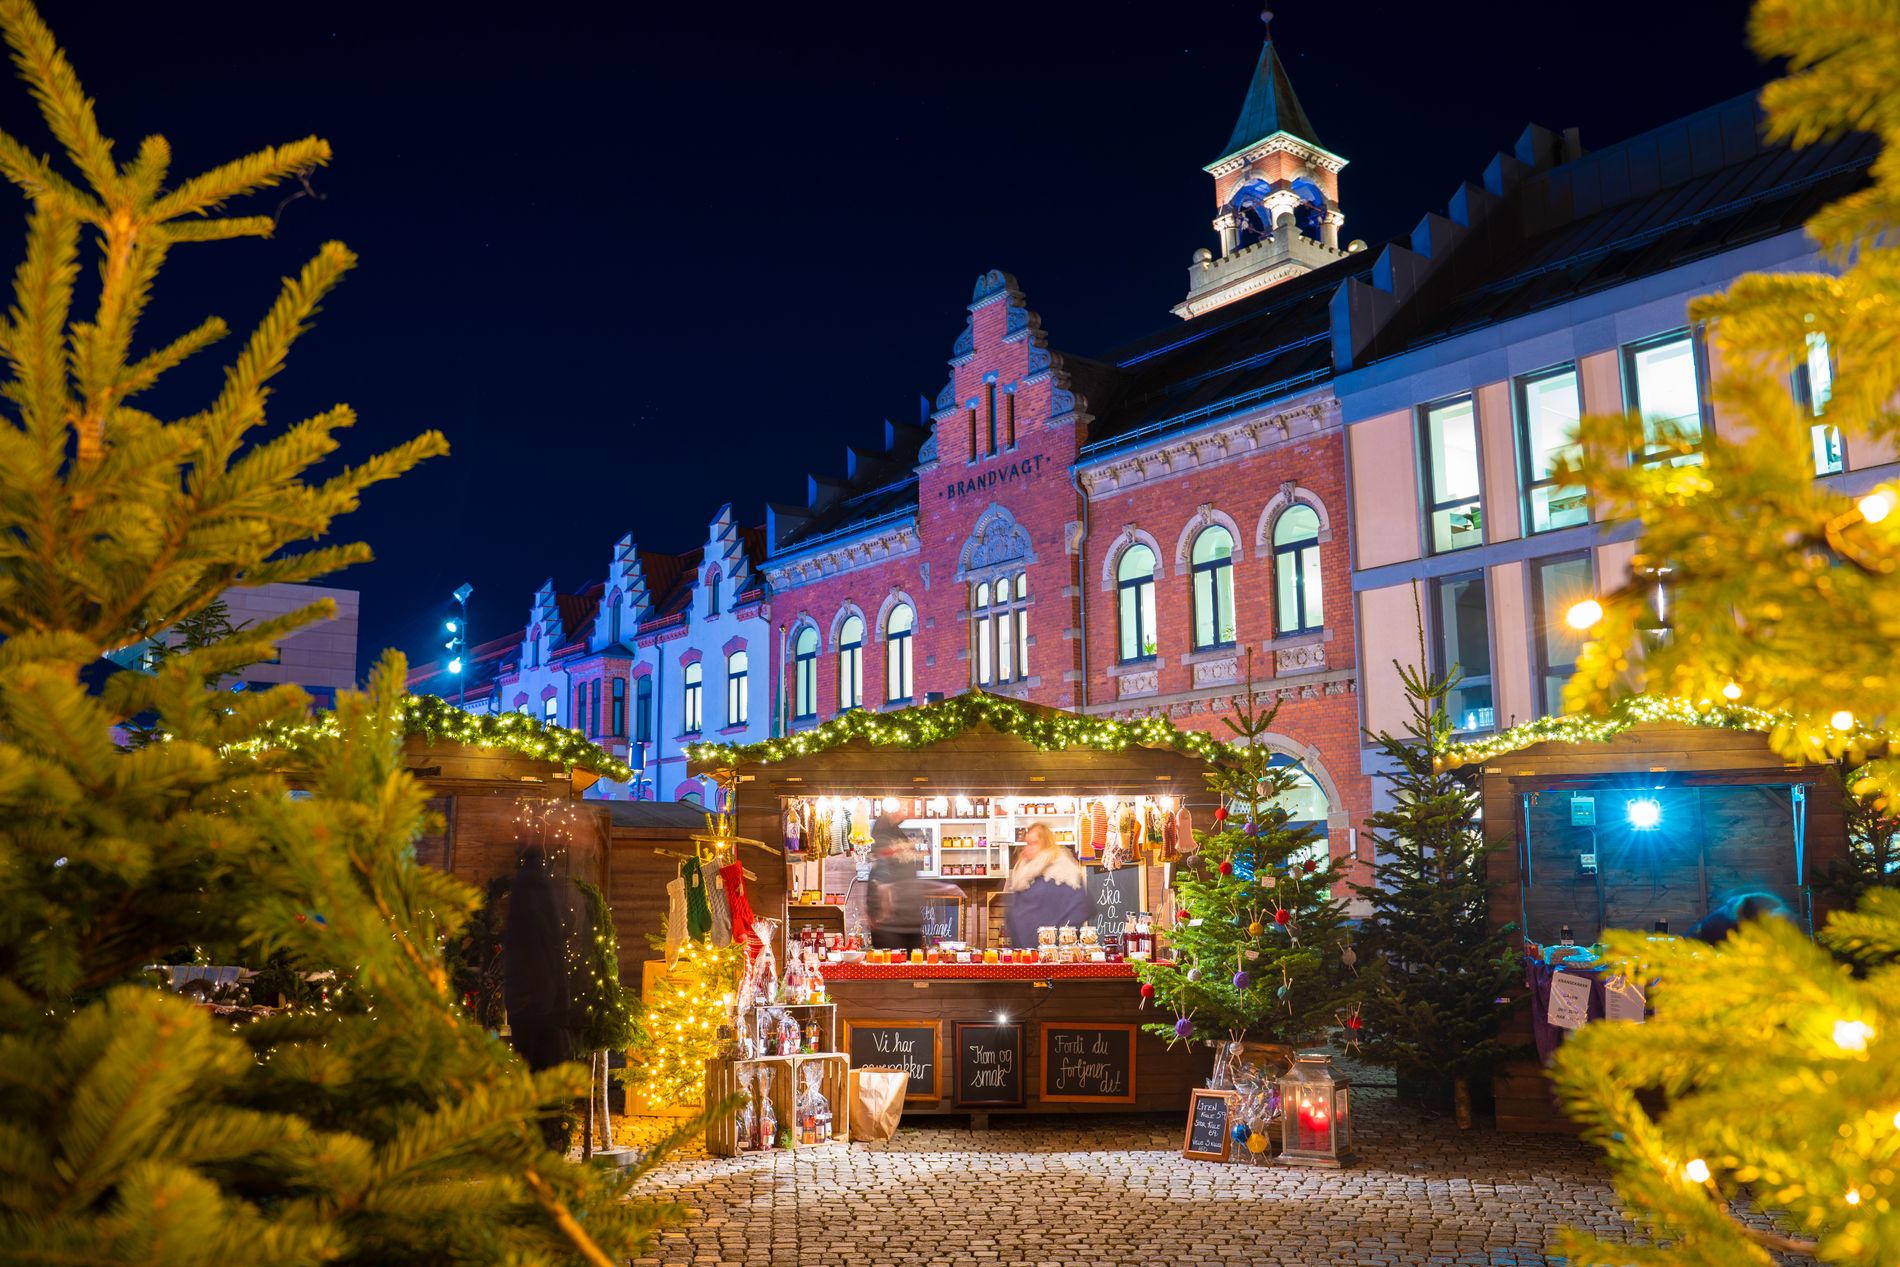 Garanti på julestemning: Julemarkedet på Torvet gir garantert julestemning! 